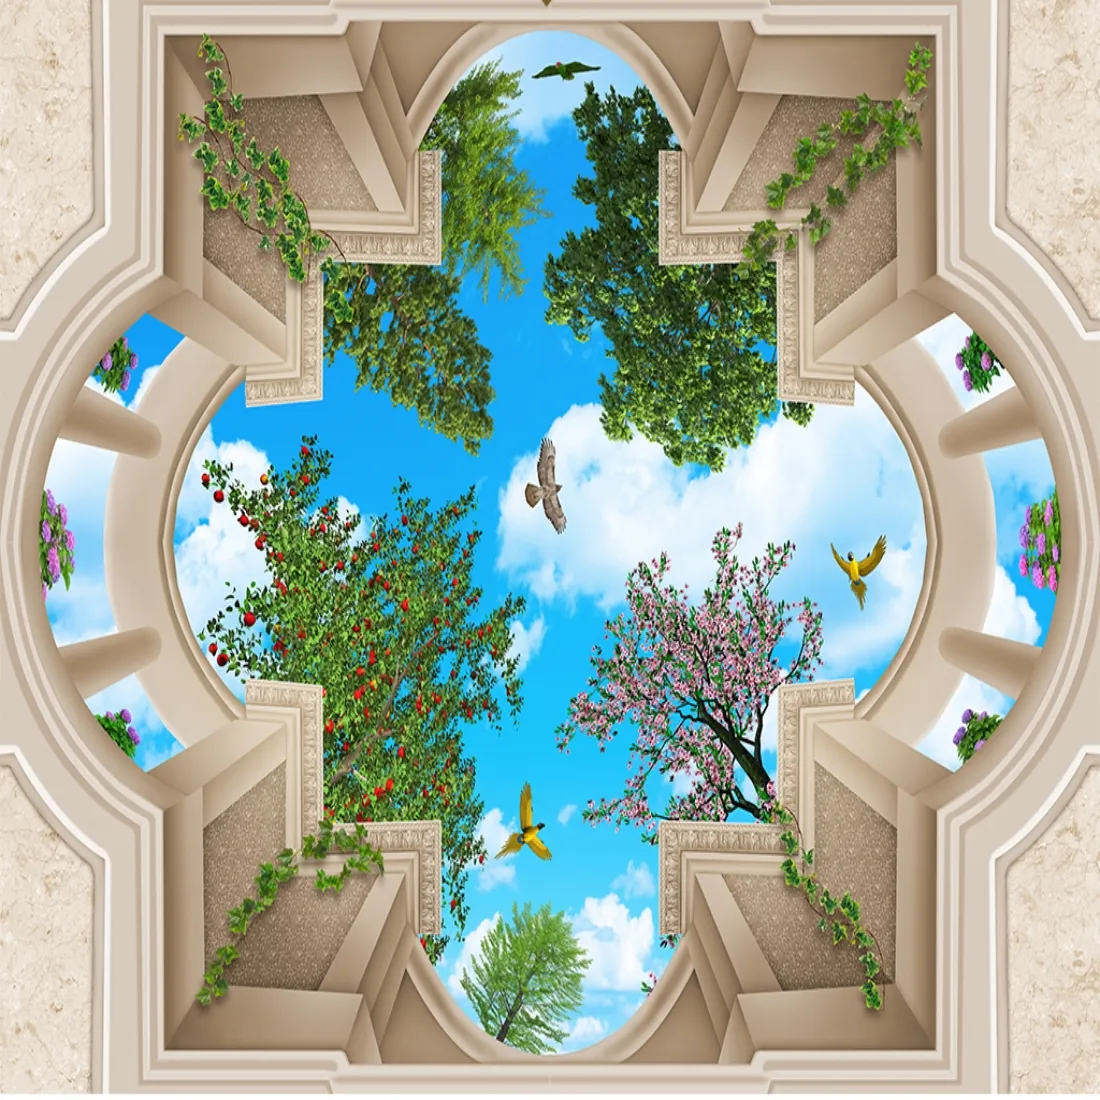 Benutzerdefinierte 3D-Fototapete Decken europäischer Palast 3D Blick auf Himmel Garten Decken oben